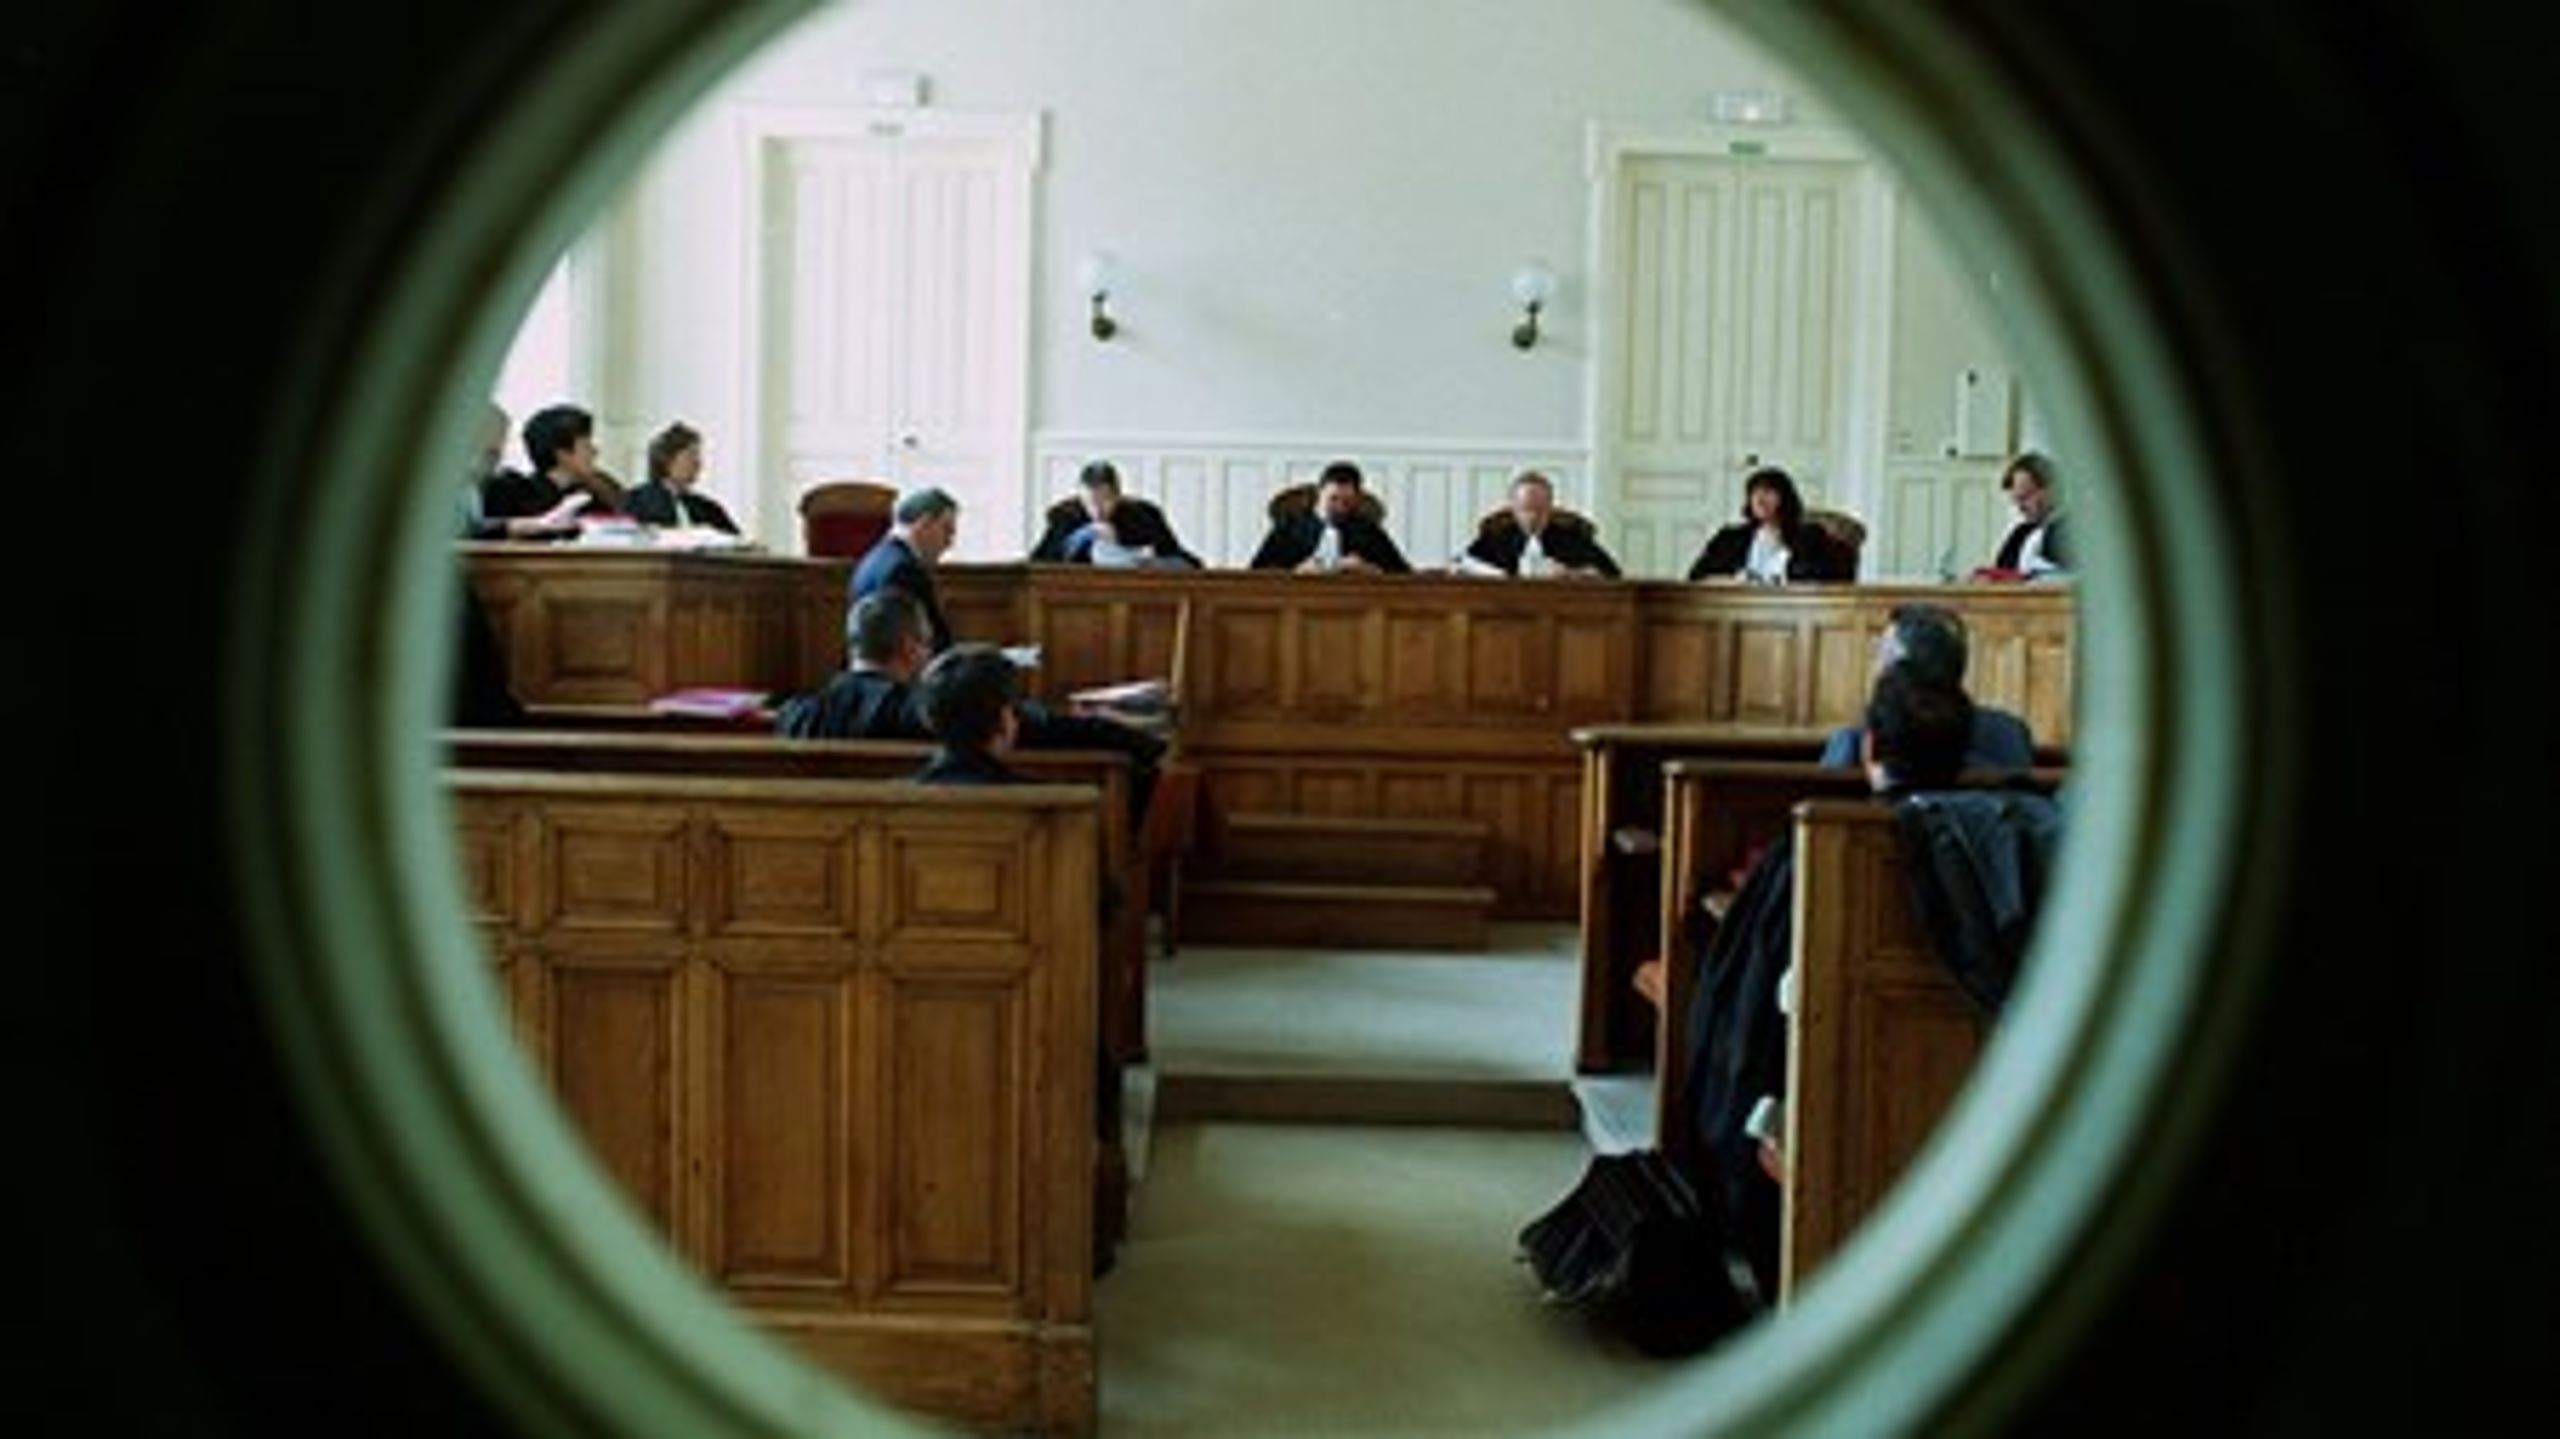 Dommerforeningen bedyrer, at dommernes bibeskæftigelse ikke går udover deres arbejde som dommere i de danske retssale.